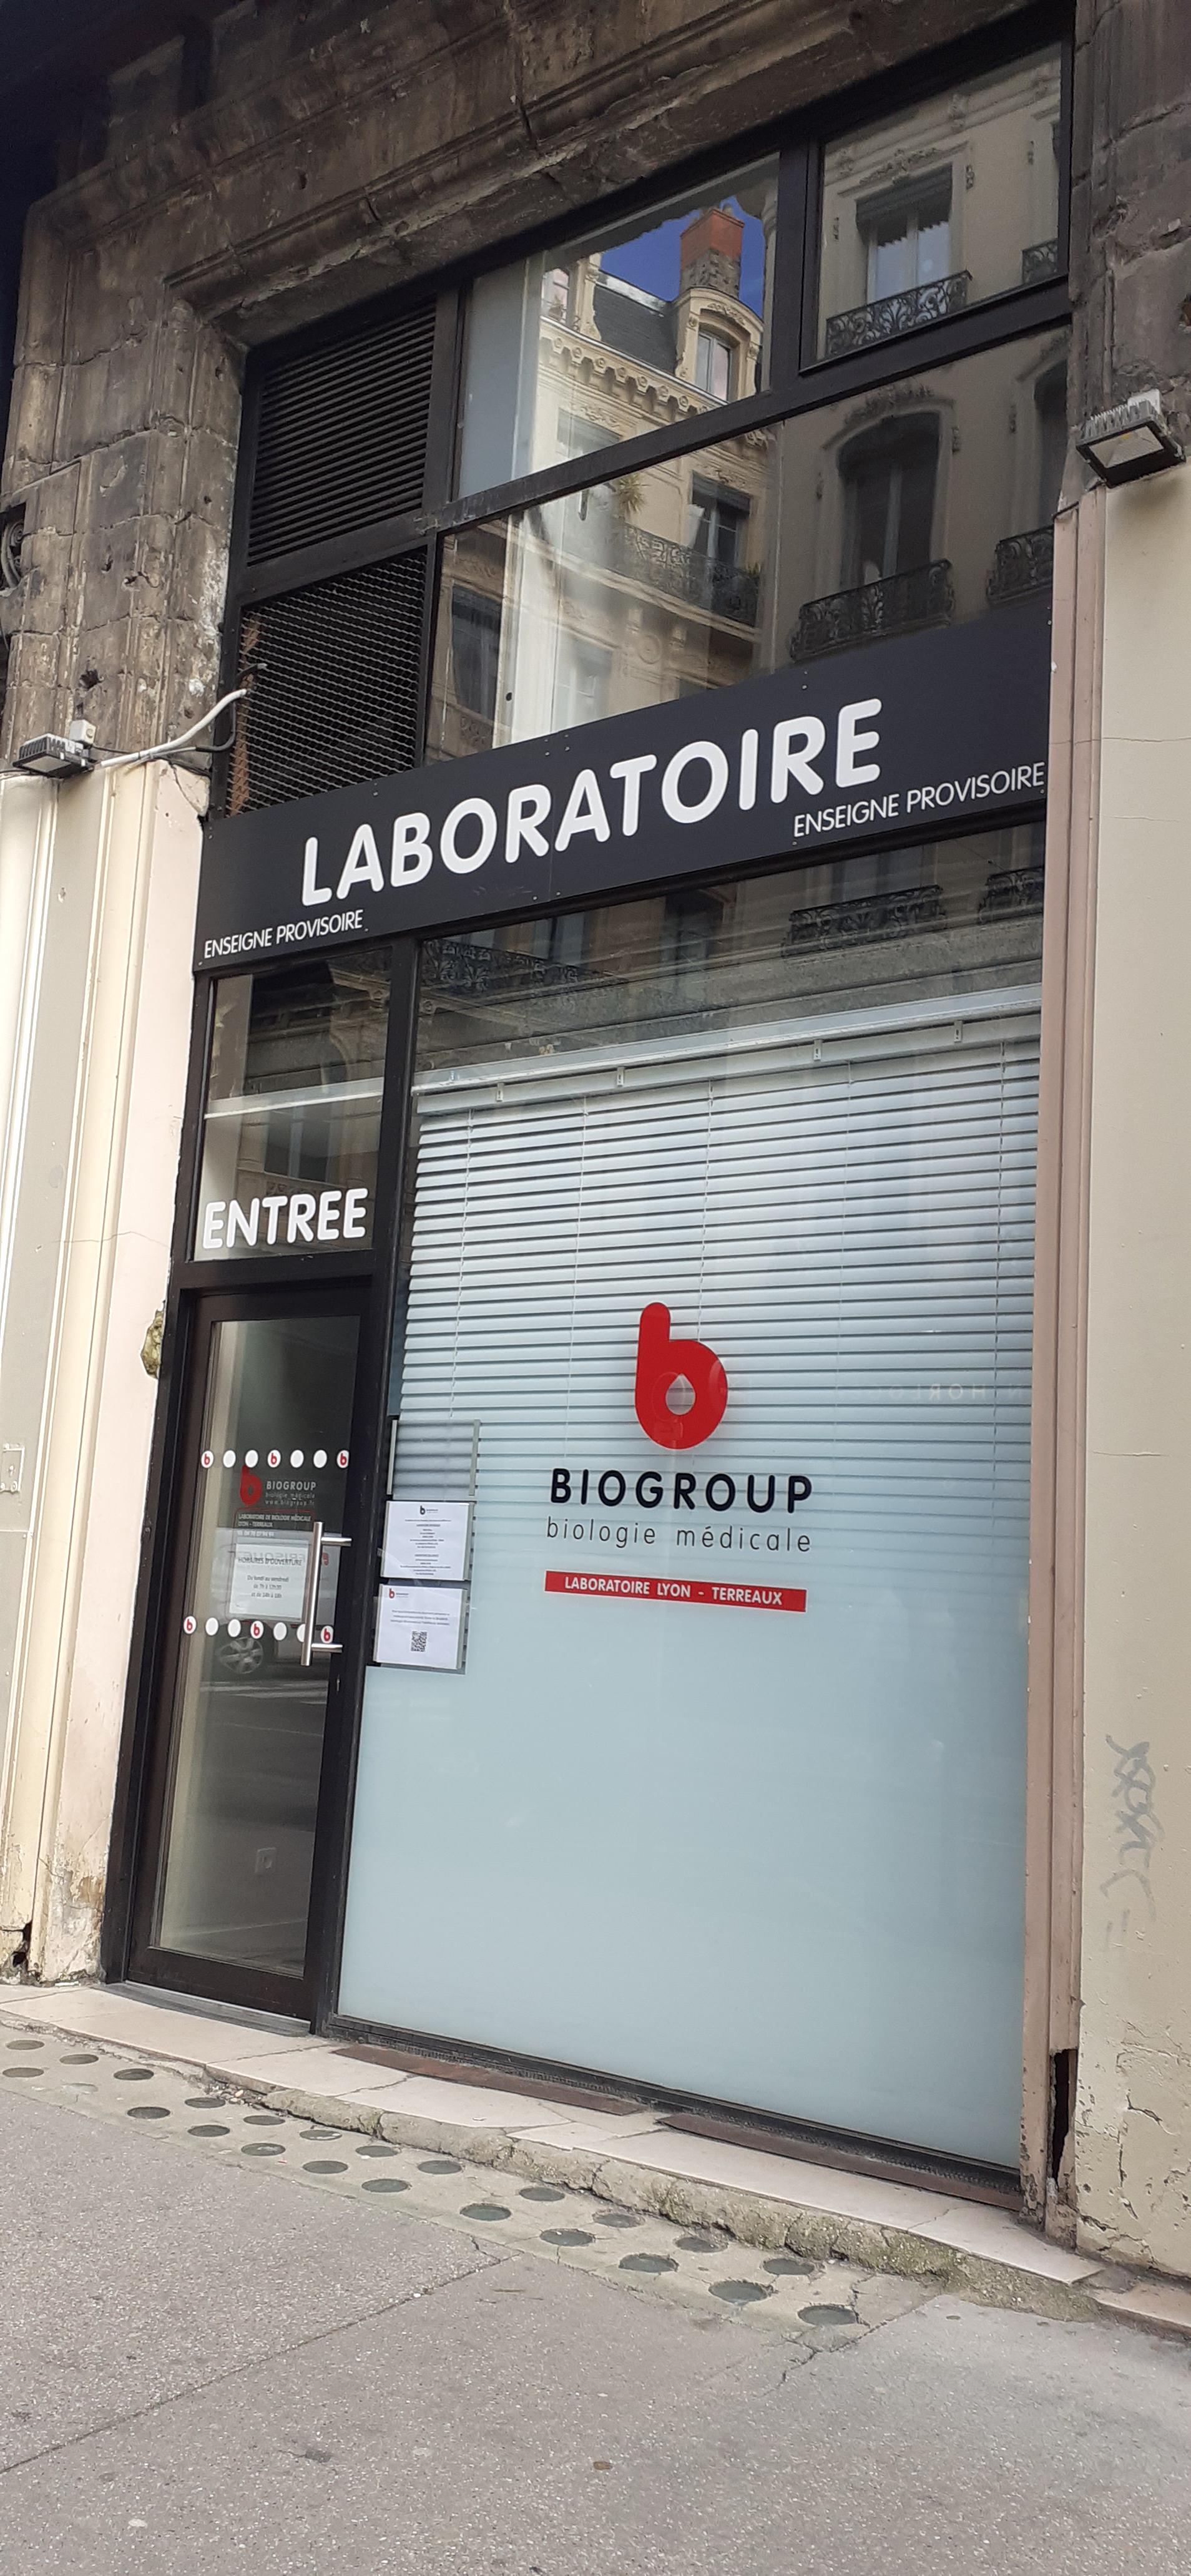 Images BIOGROUP - Laboratoire de Lyon Terreaux